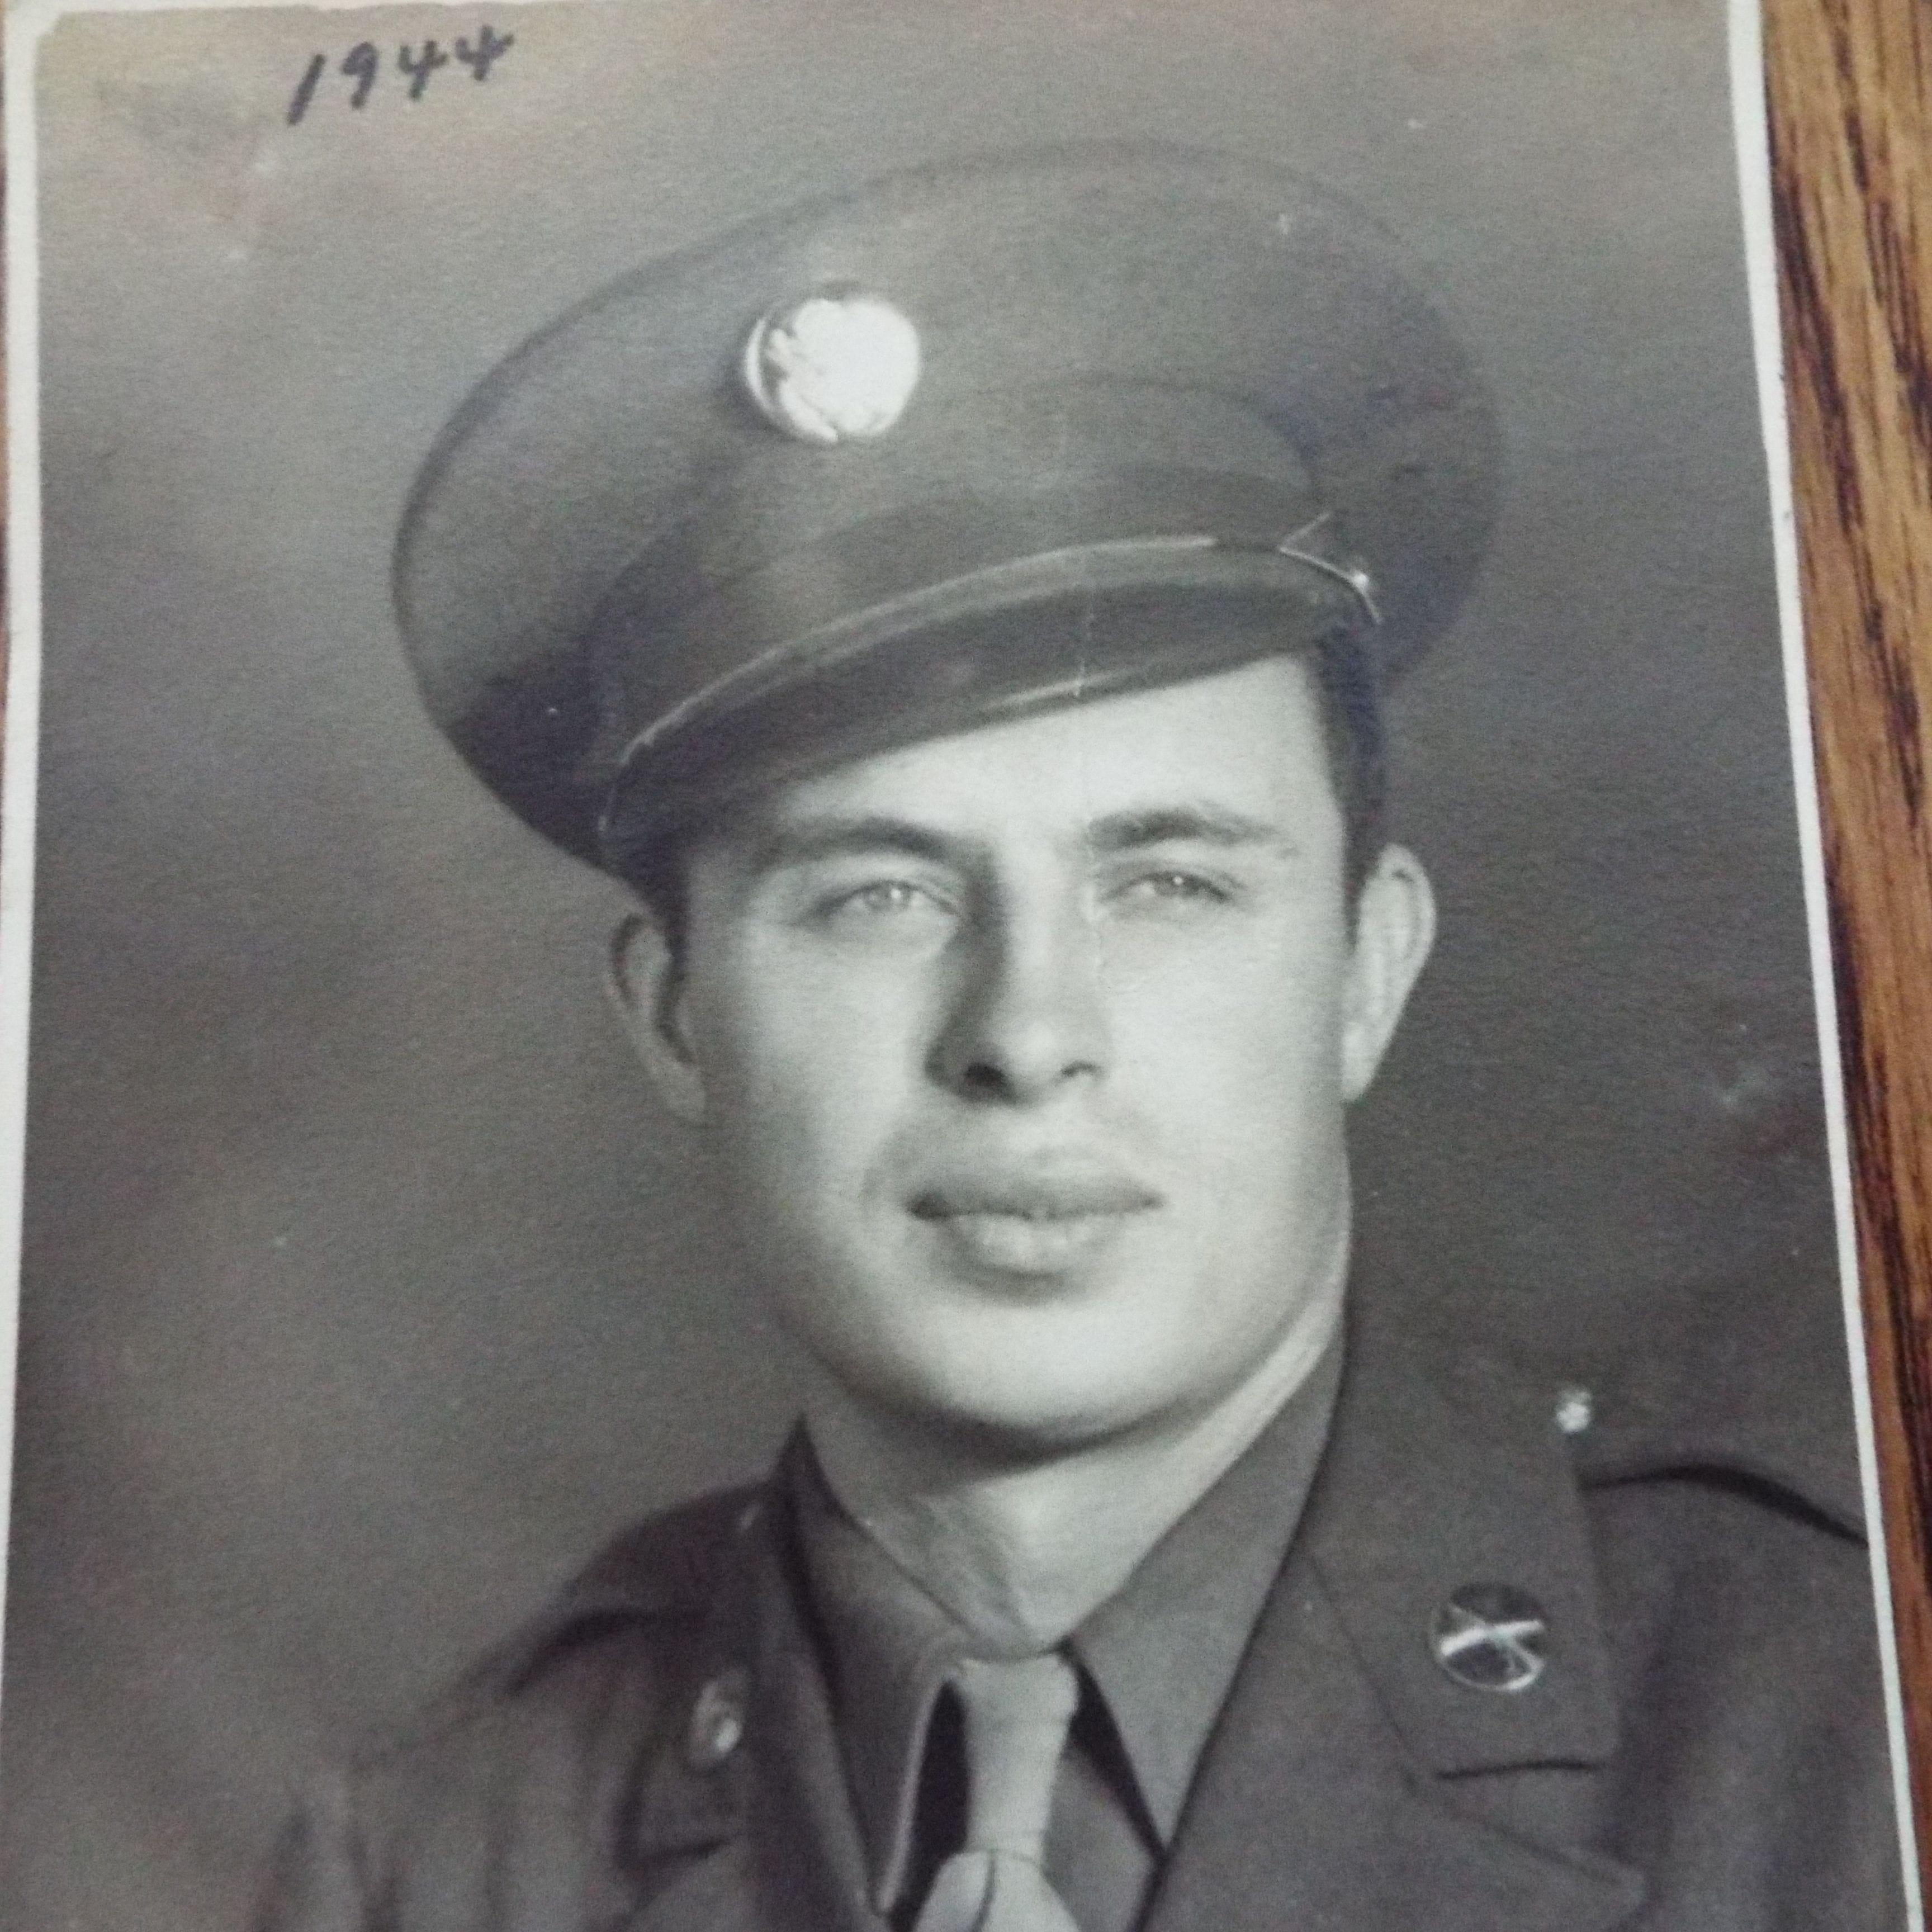 Harold V. Frye, Corporal, Infantry, WWII, Dec. 17, 1942 until Oct. 31, 1945